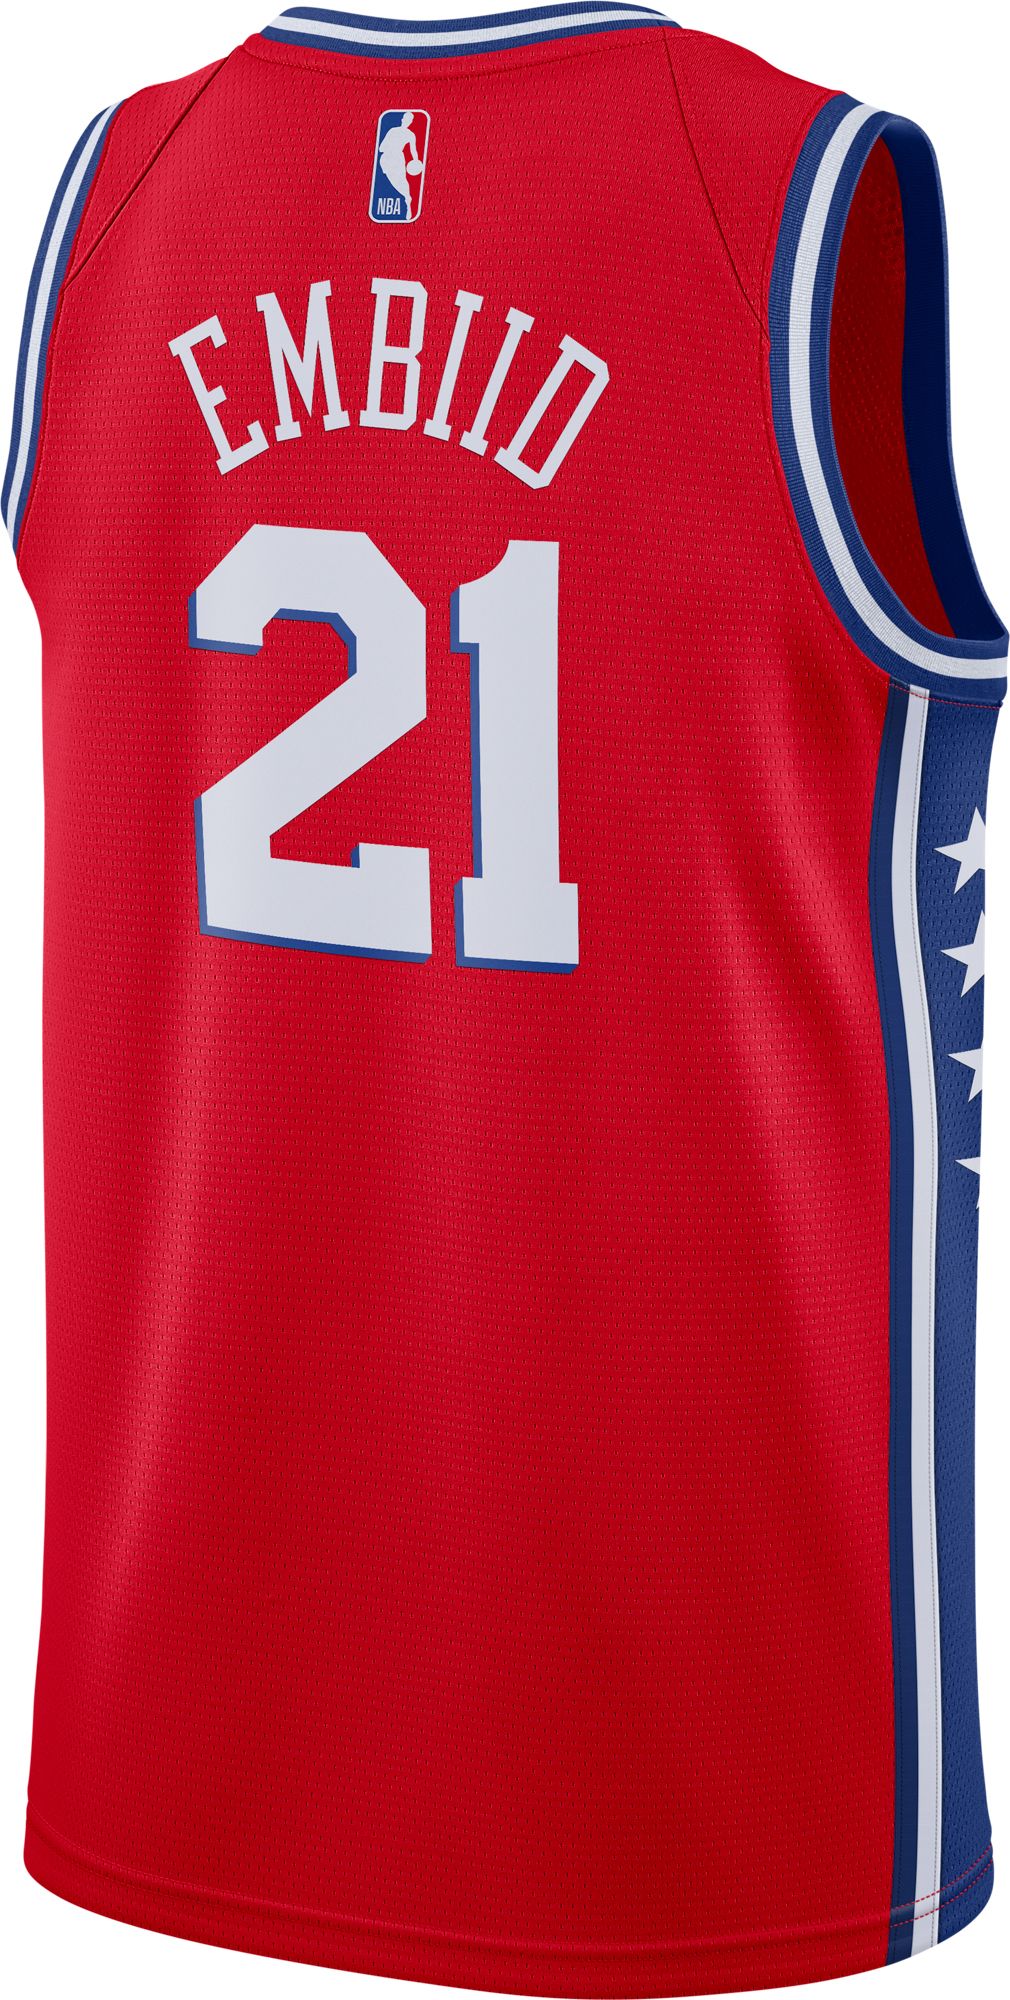 Red Jordan NBA Philadelphia 76ers Embiid #21 Swingman Jersey